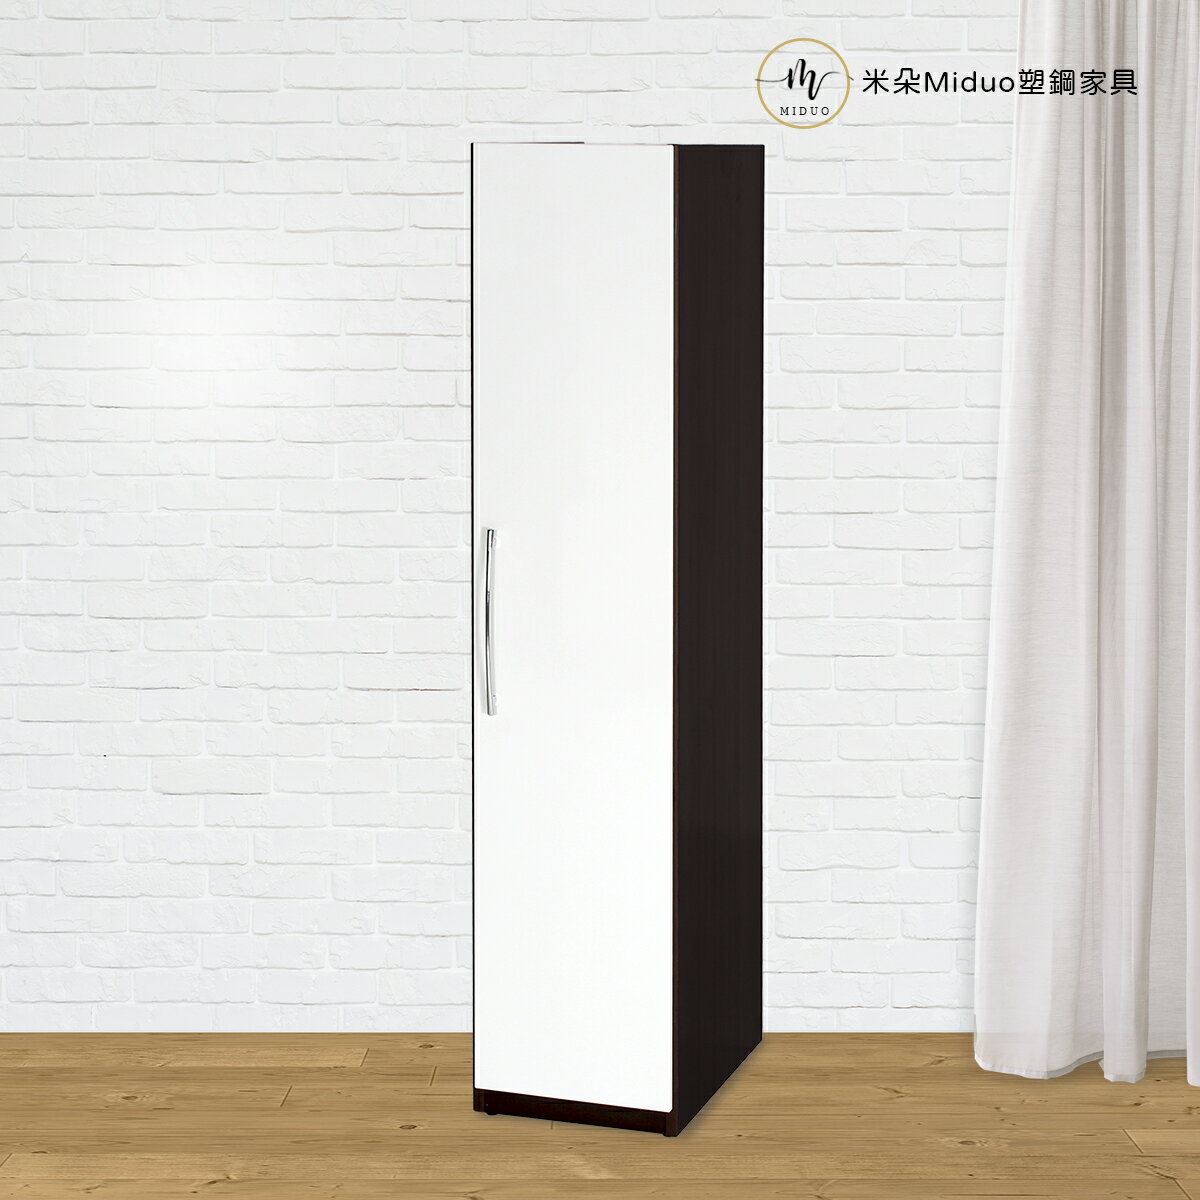 1.4尺單門塑鋼衣櫃 衣櫥 防水塑鋼家具【米朵Miduo】